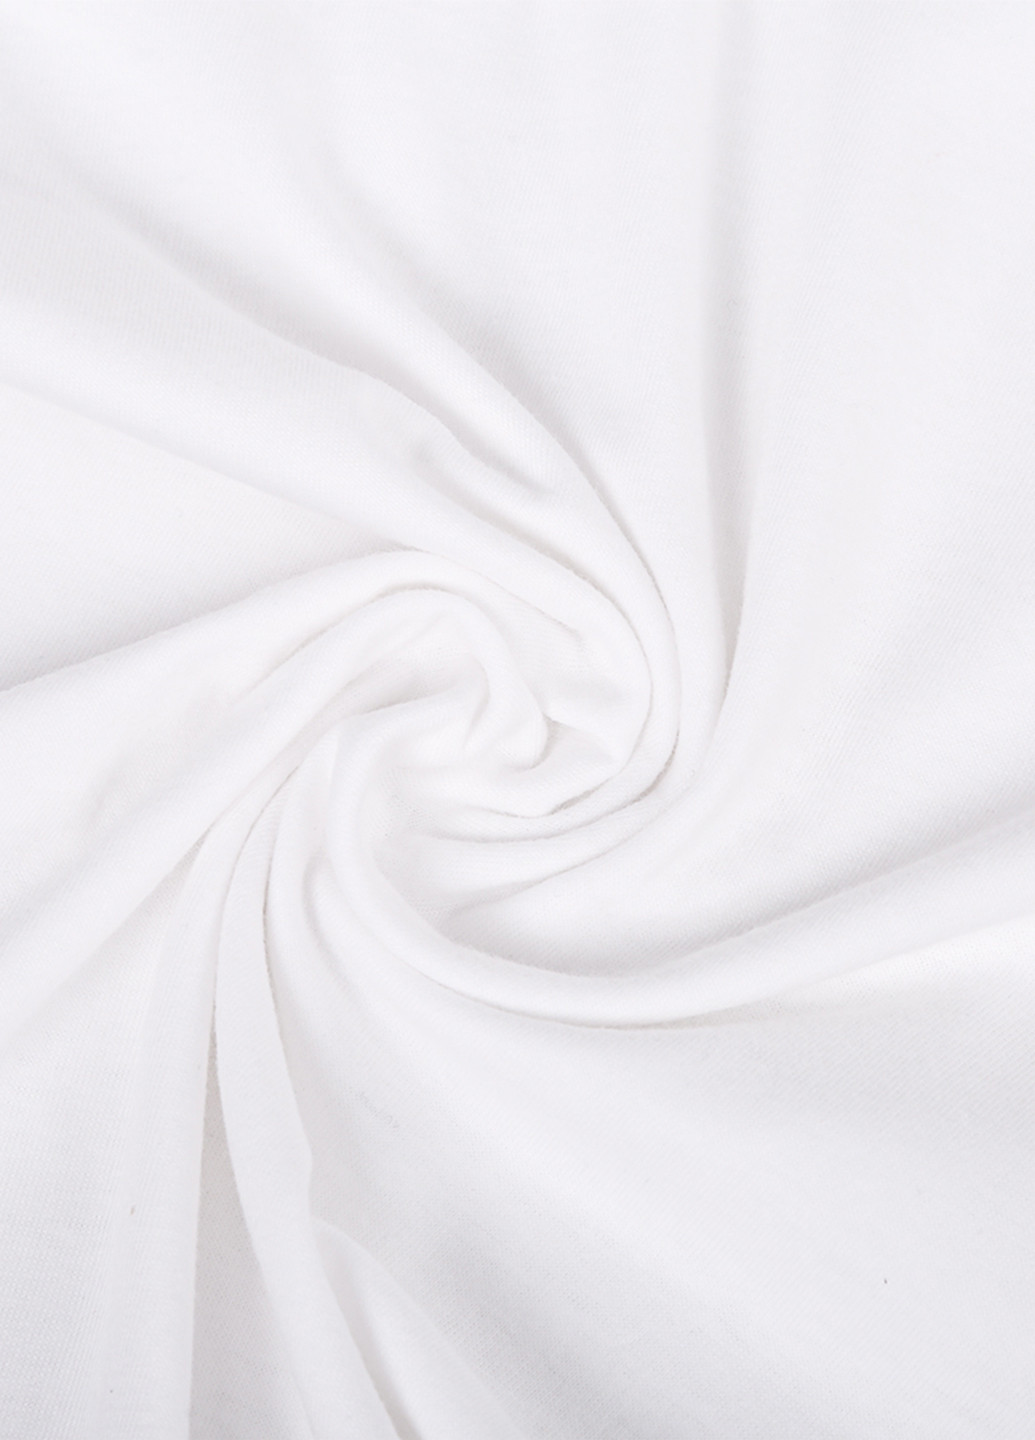 Біла демісезонна футболка дитяча лайк лисичка (likee fox) білий (9224-1033) 164 см MobiPrint